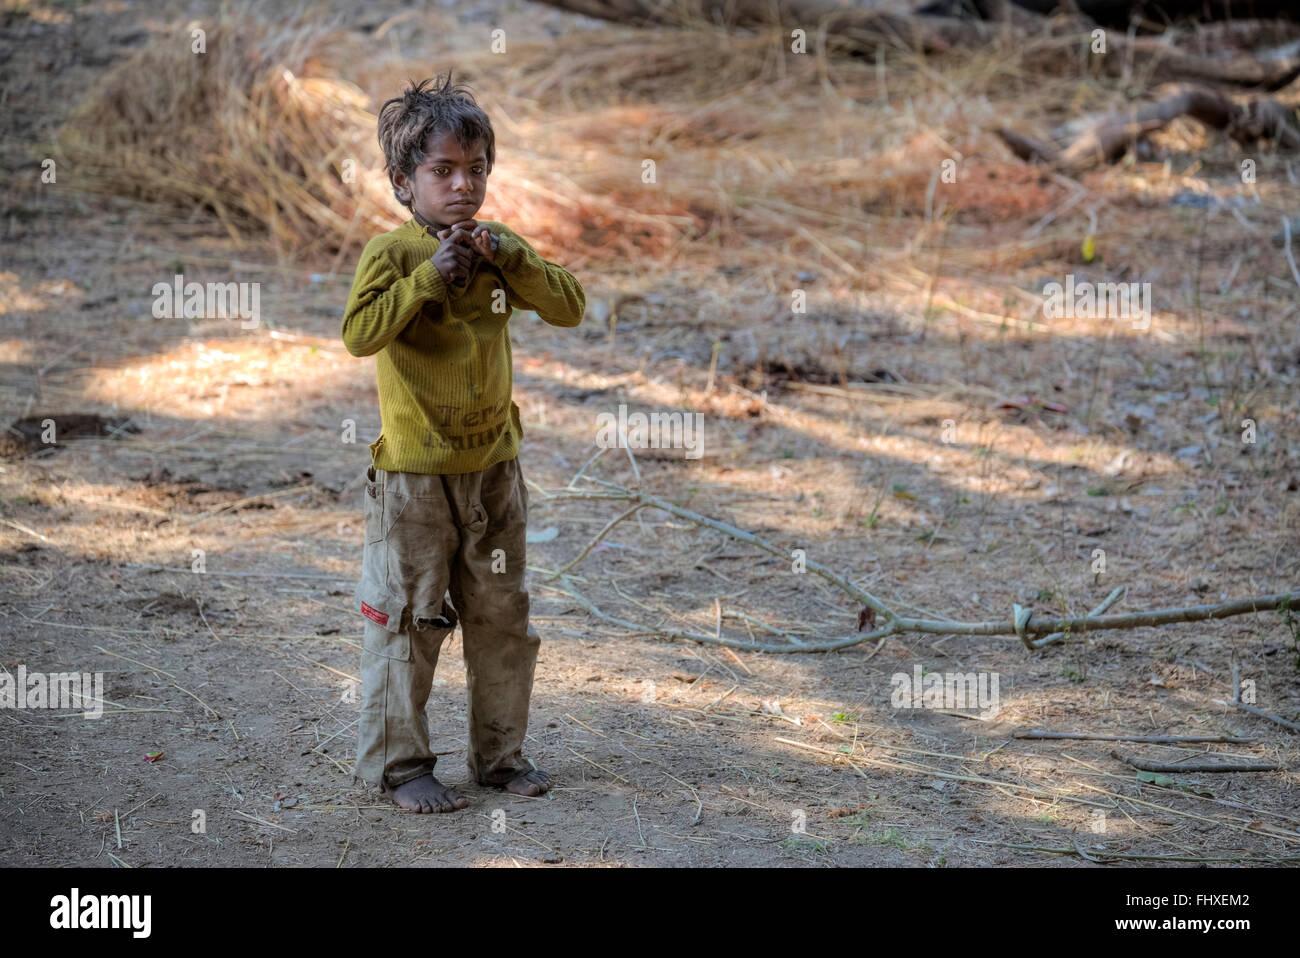 Jeune garçon dans les zones rurales du Rajasthan, Inde Banque D'Images